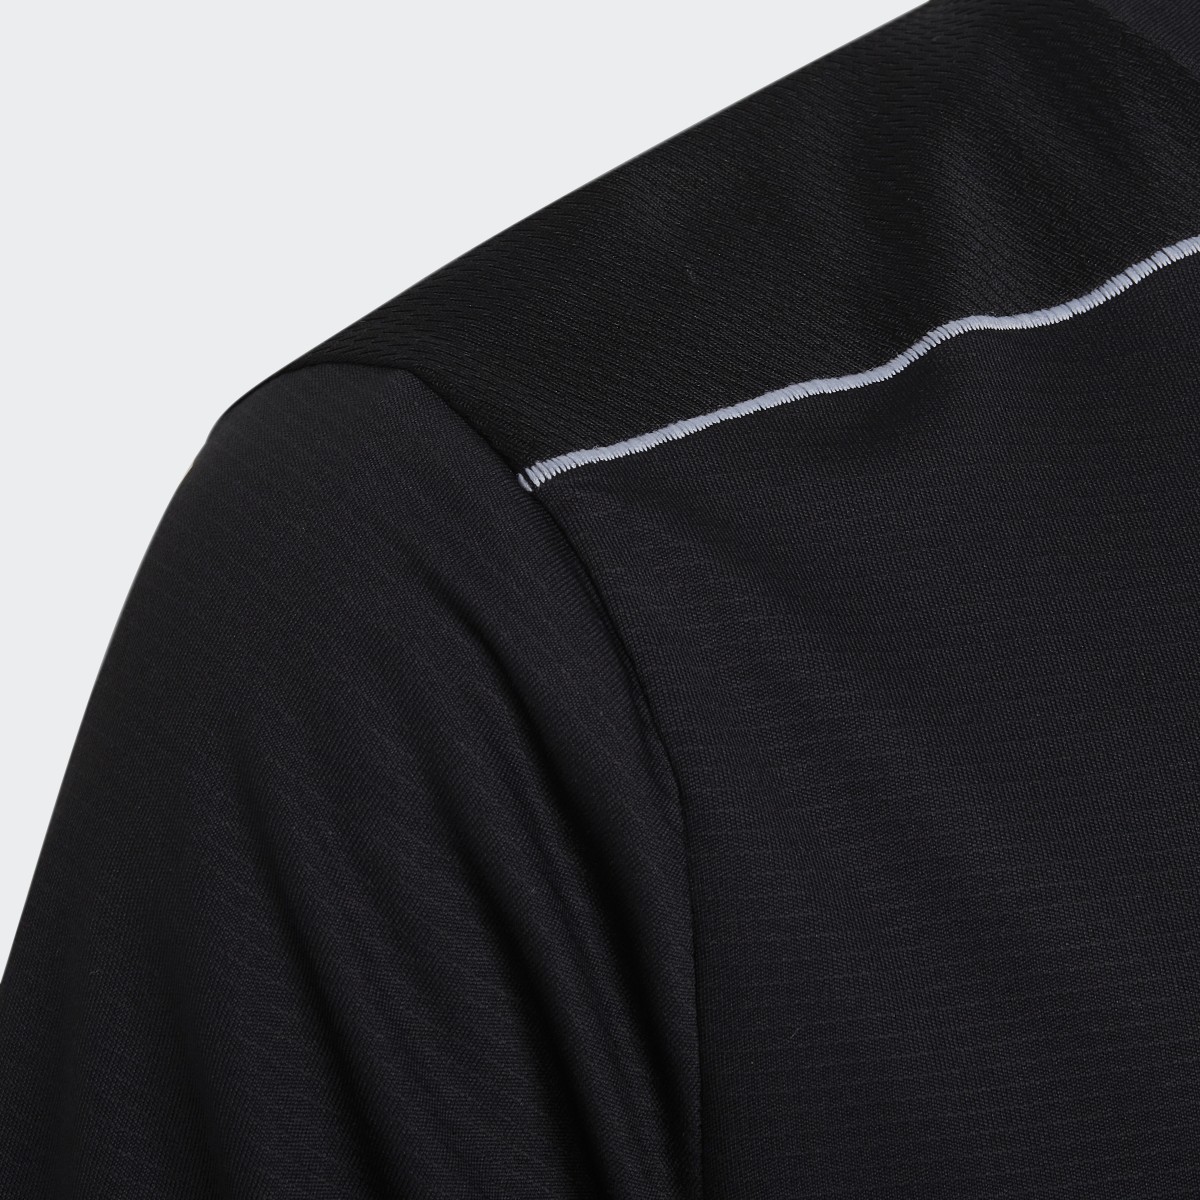 Adidas T-shirt AEROREADY Designed for Sport. 5